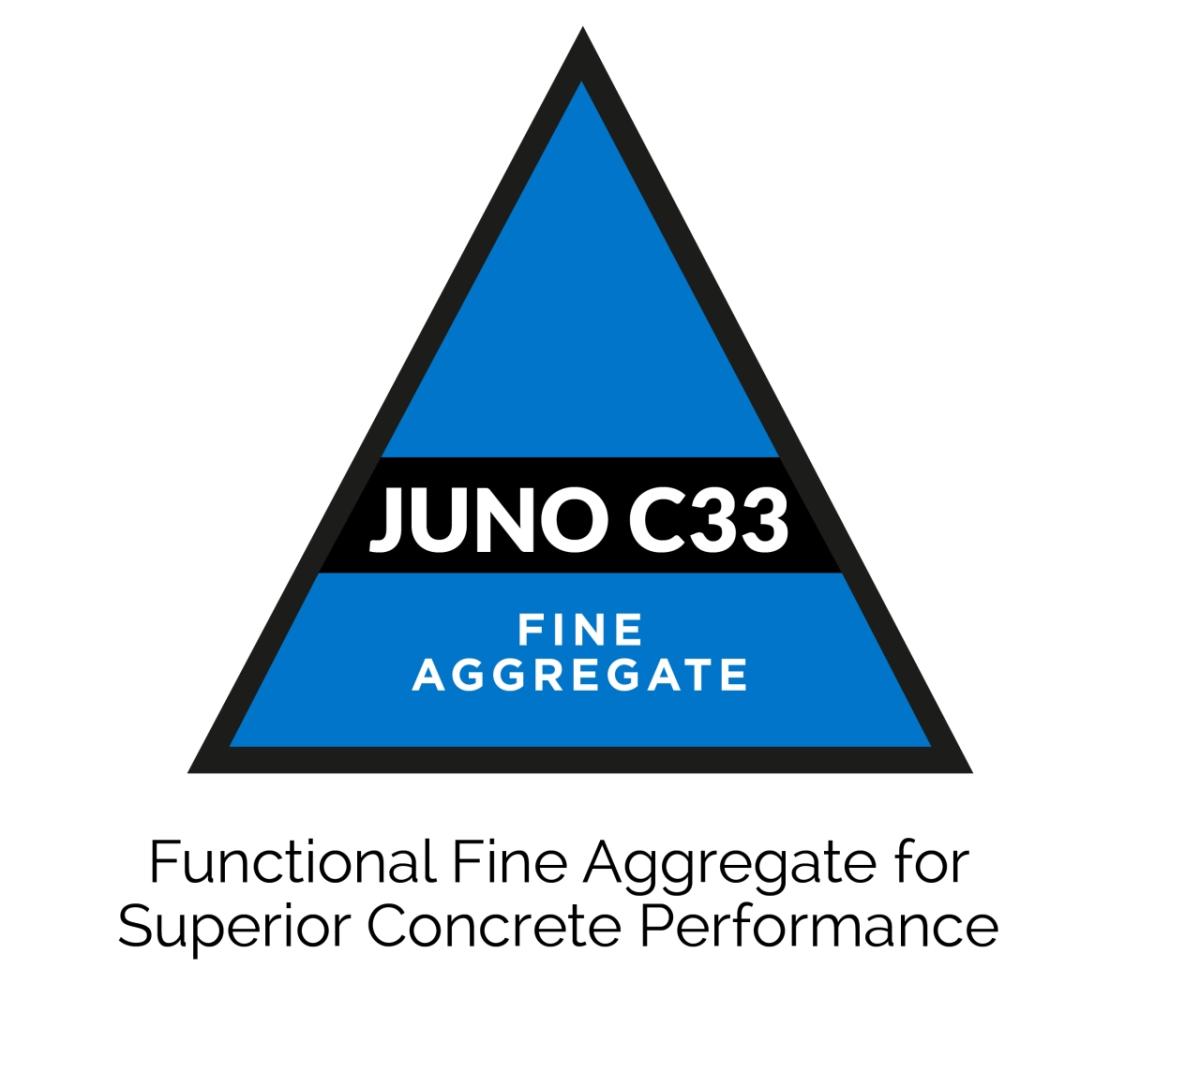 Juno C33 Fine Aggregate logo